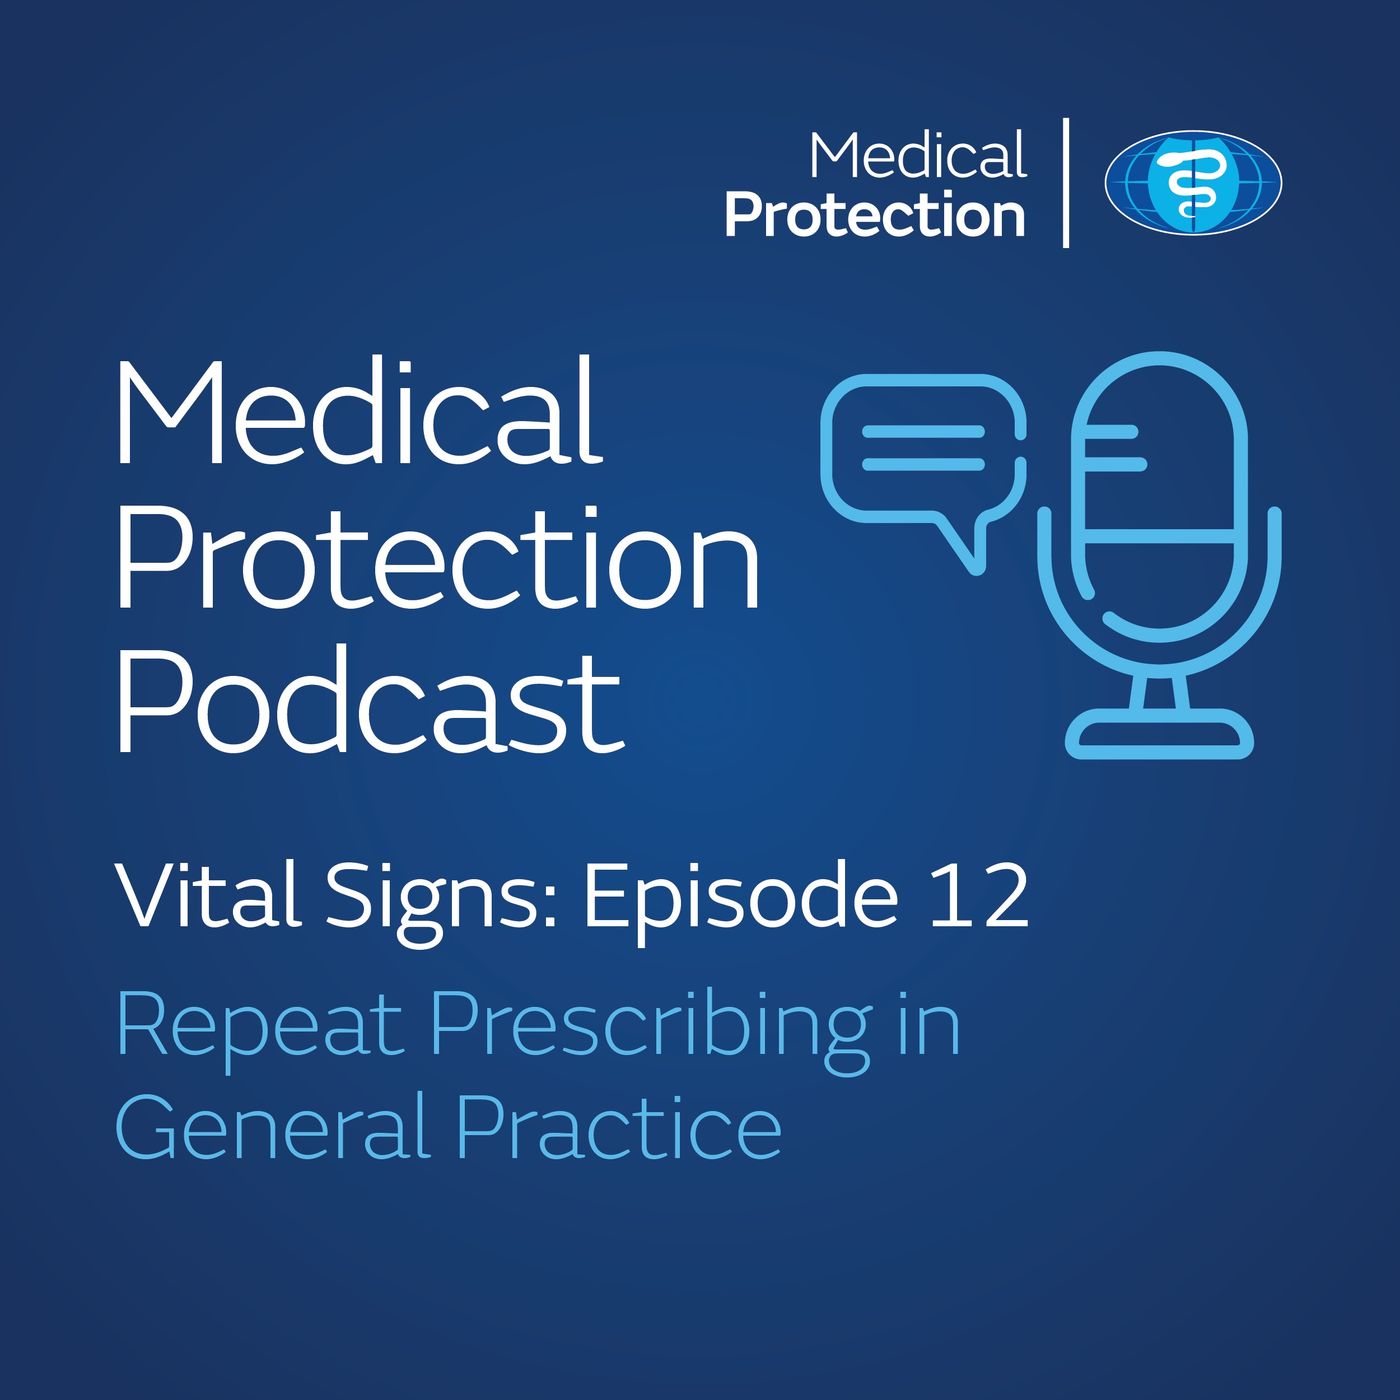 Vital signs episode 12: Safer Repeat Prescribing